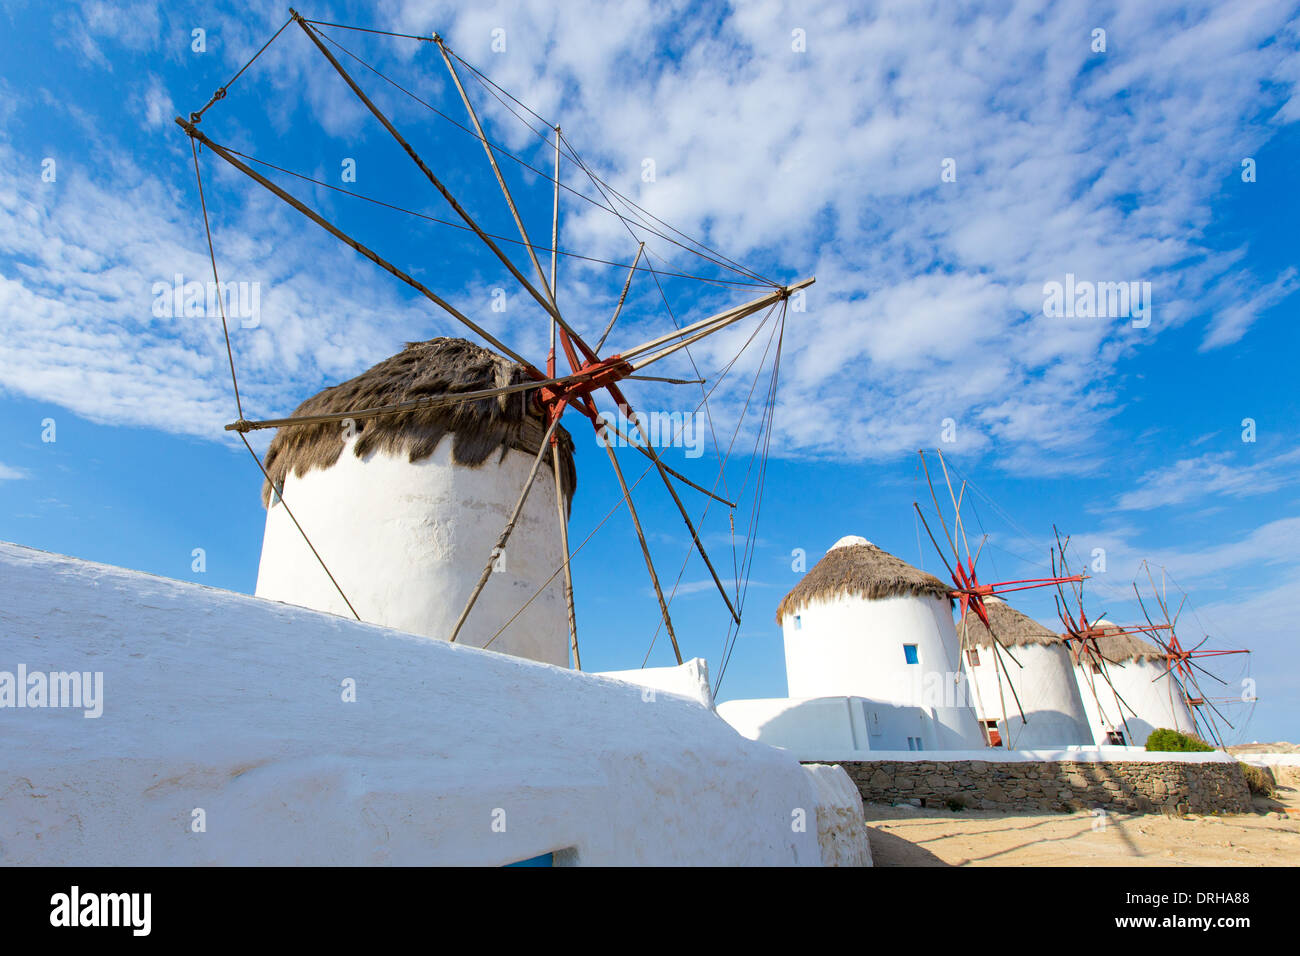 Les moulins à vent de Mykonos, Cyclades Grèce Banque D'Images